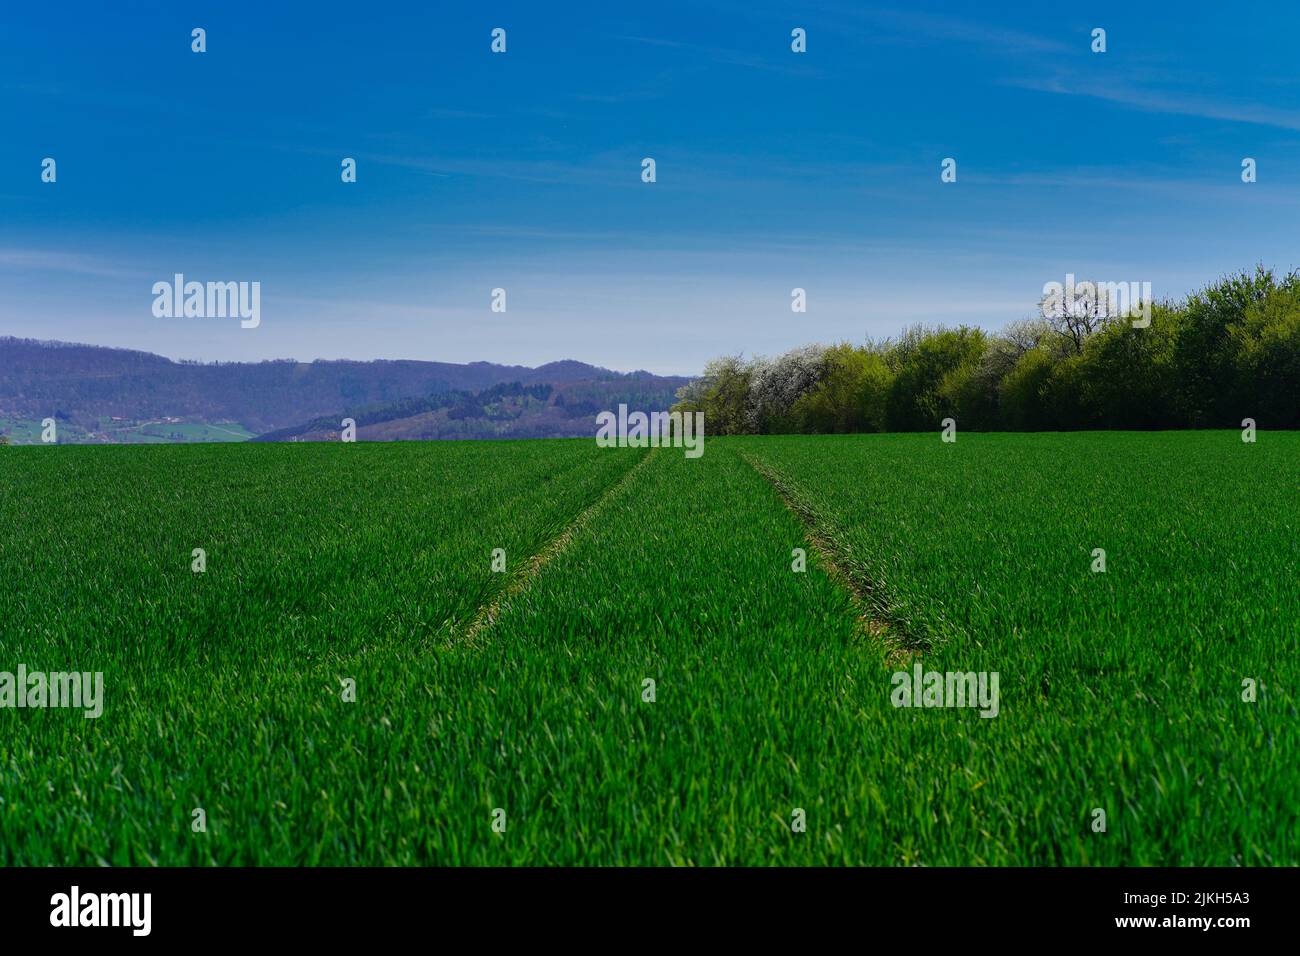 Eine schöne Aussicht auf ein grünes Grasfeld mit Bäumen im Hintergrund Stockfoto